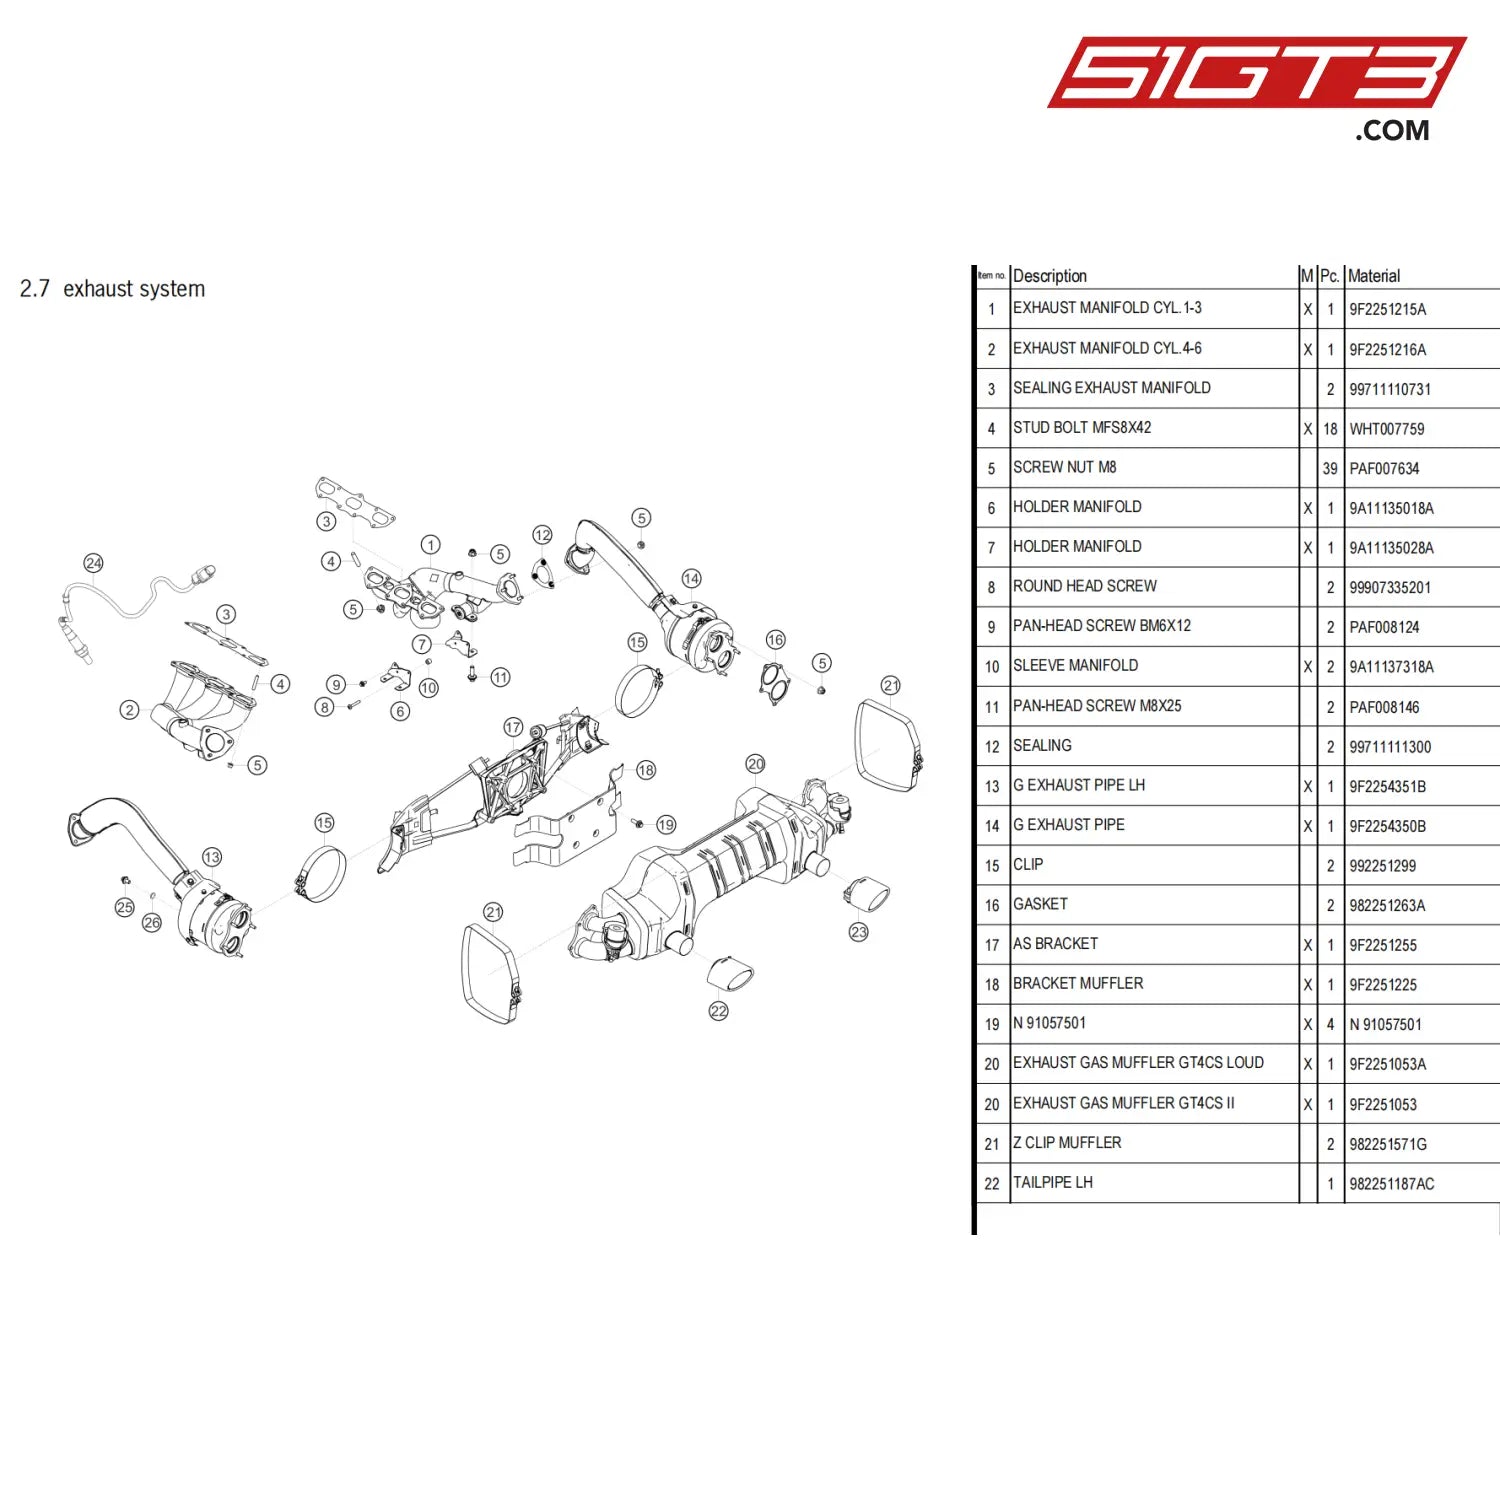 Round Head Screw - 99907335201 [Porsche 718 Cayman Gt4 Clubsport] Exhaust System